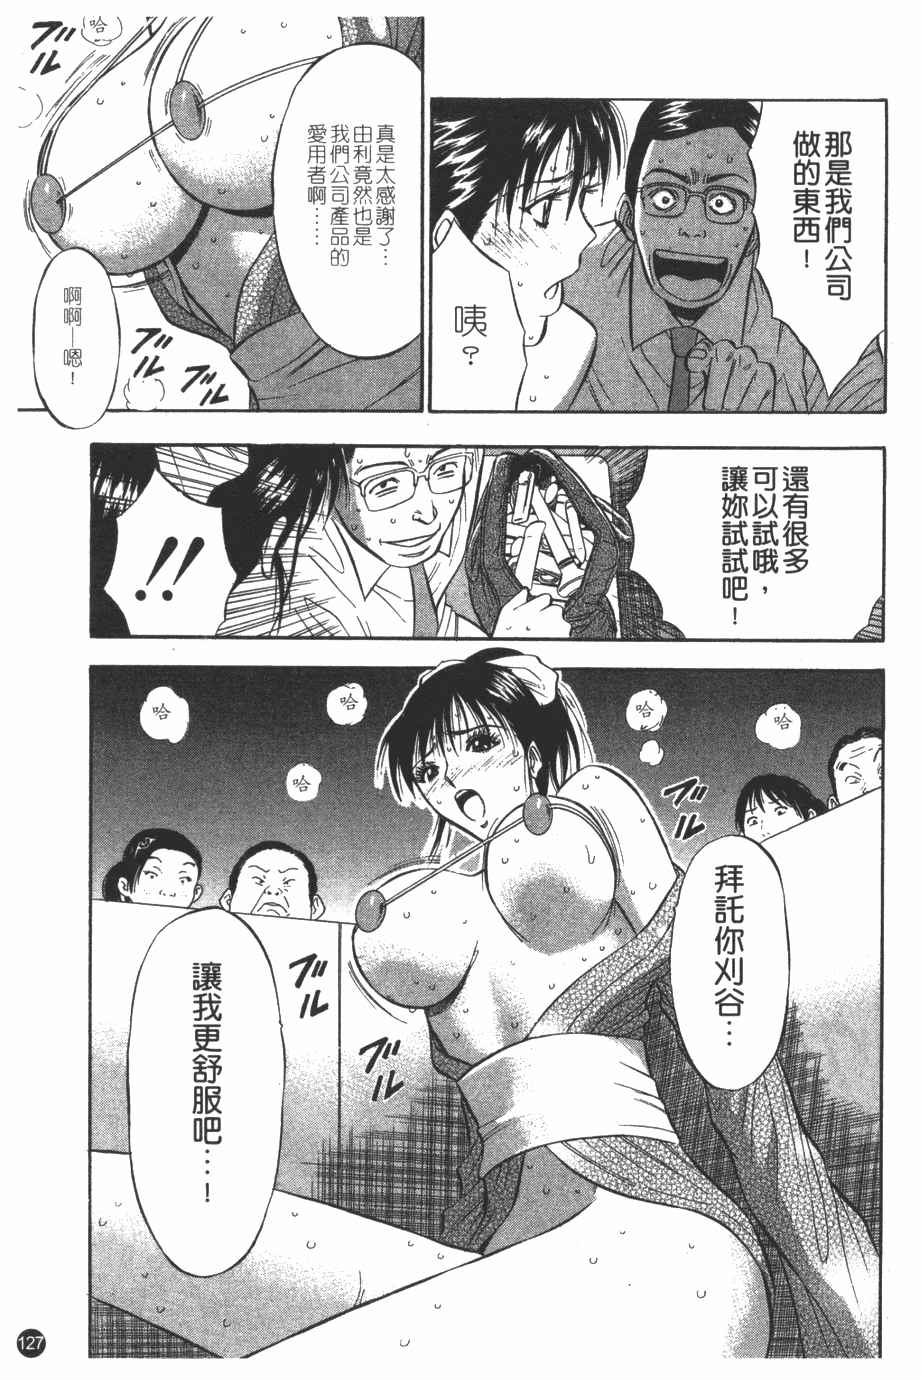 [Nagashima Chosuke] Sakuradoori no Megami - The Venus of SAKURA St. 1 [Chinese] 127